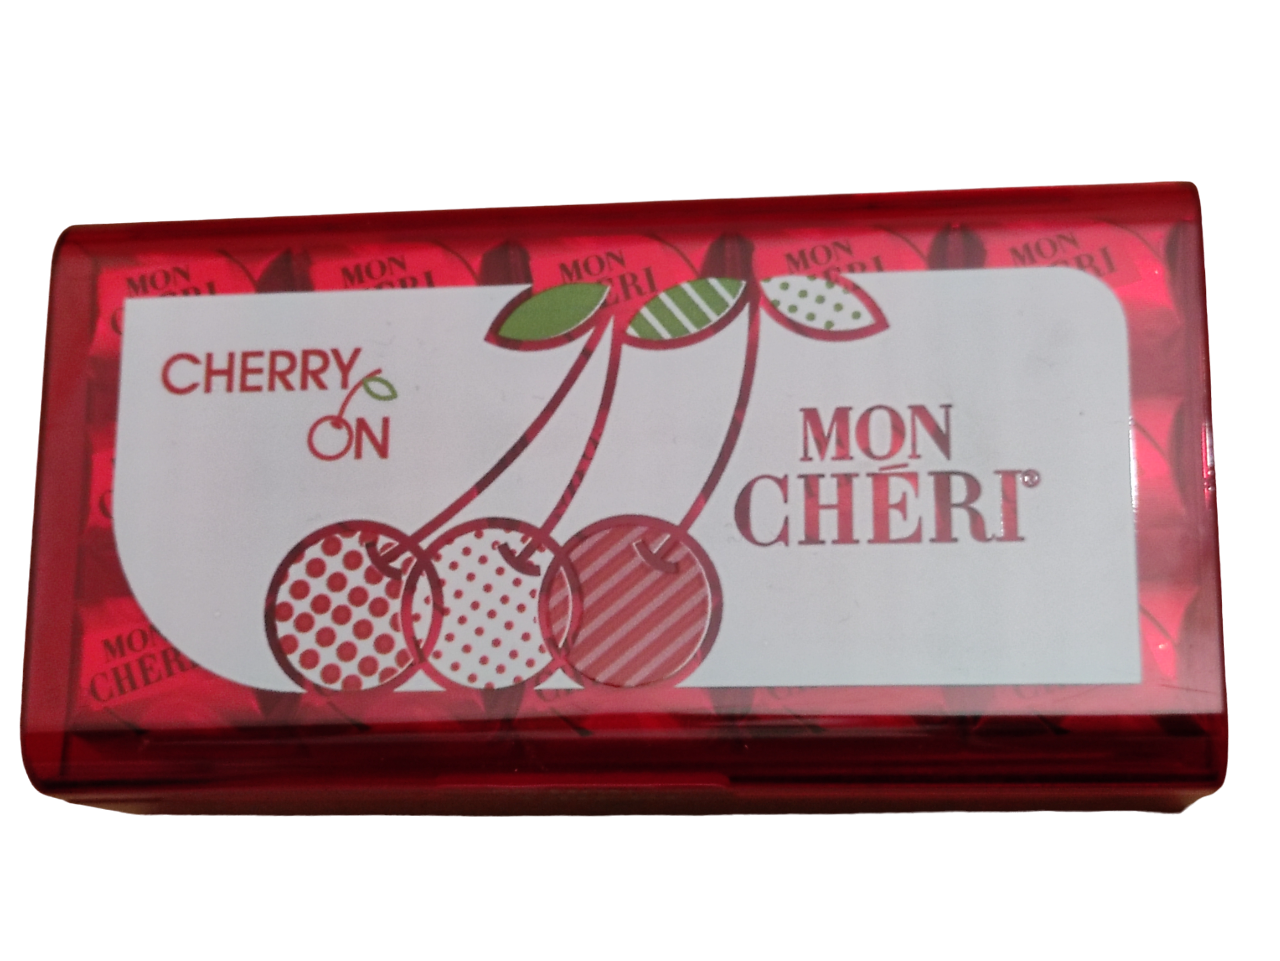 Mon Cheri Cherry Liqueur Chocolats - 315g